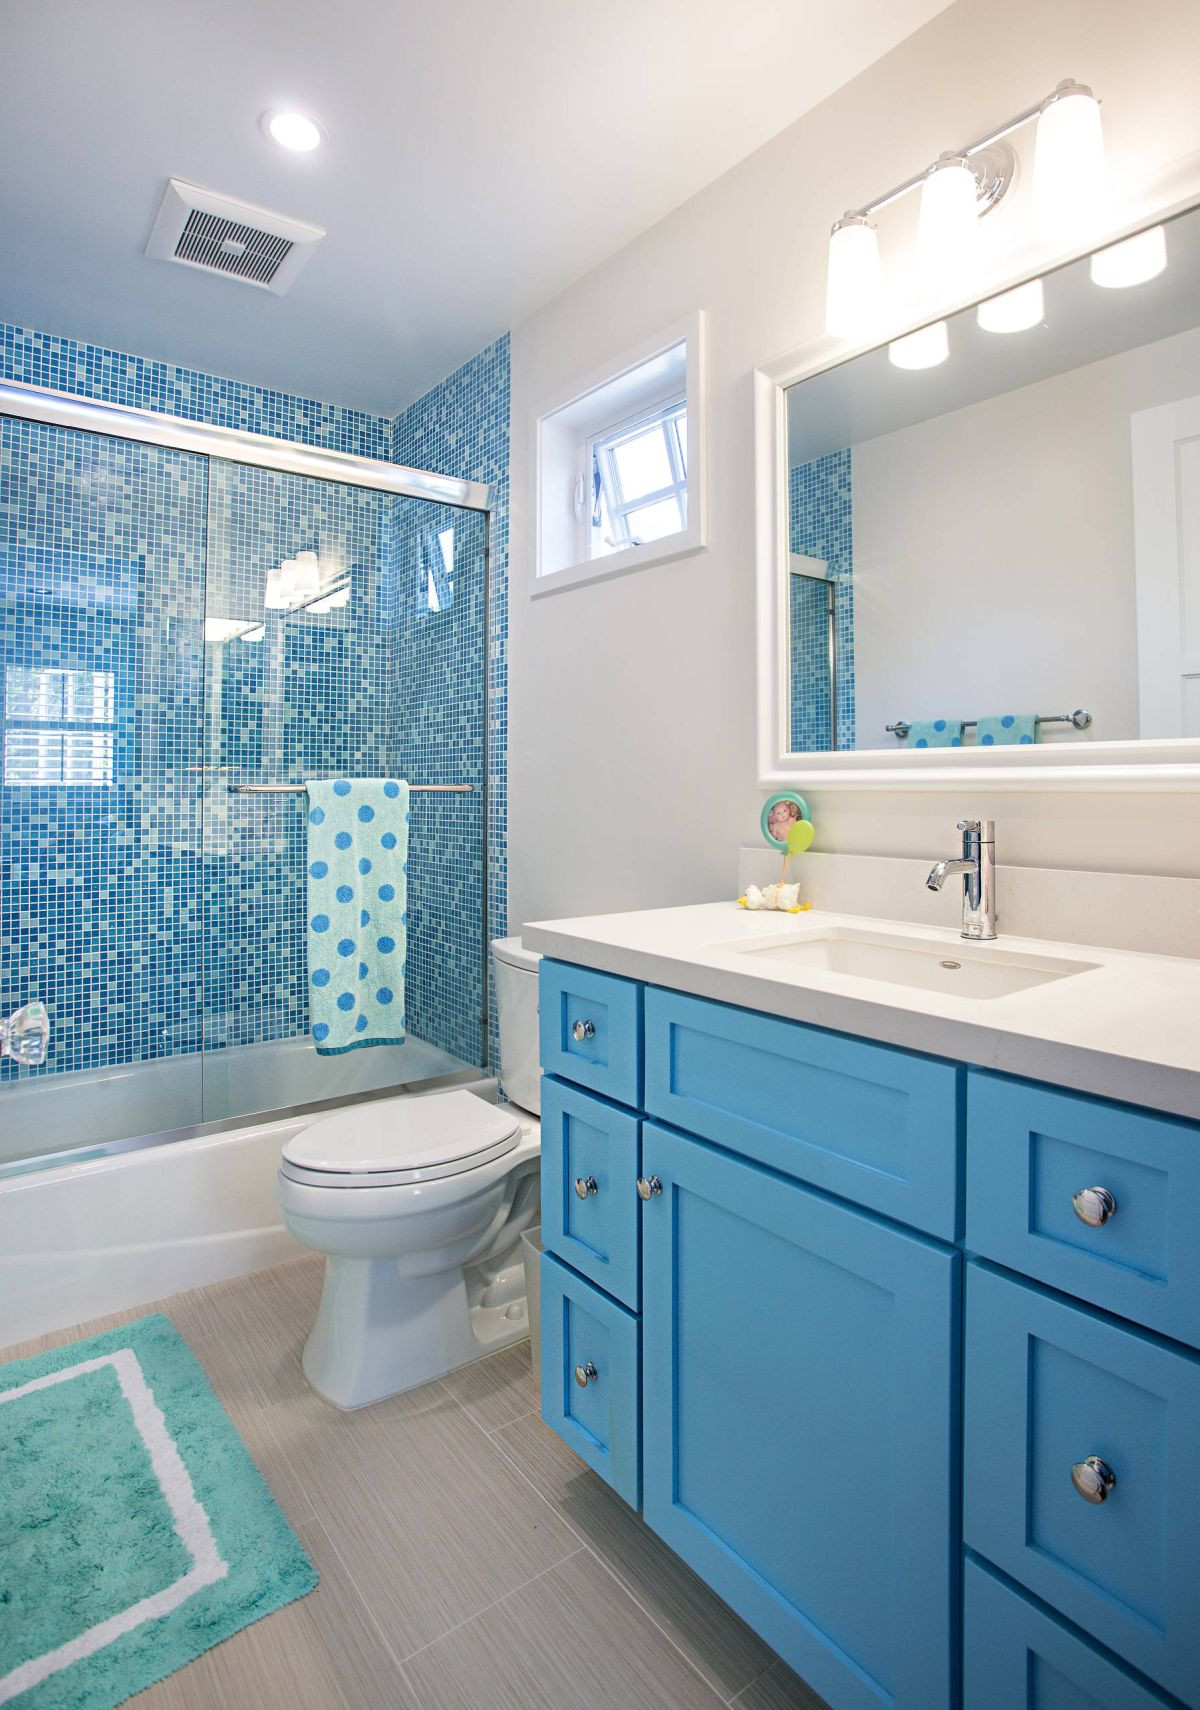 Kids Bathroom Sets
 12 Tips for The Best Kids Bathroom Decor